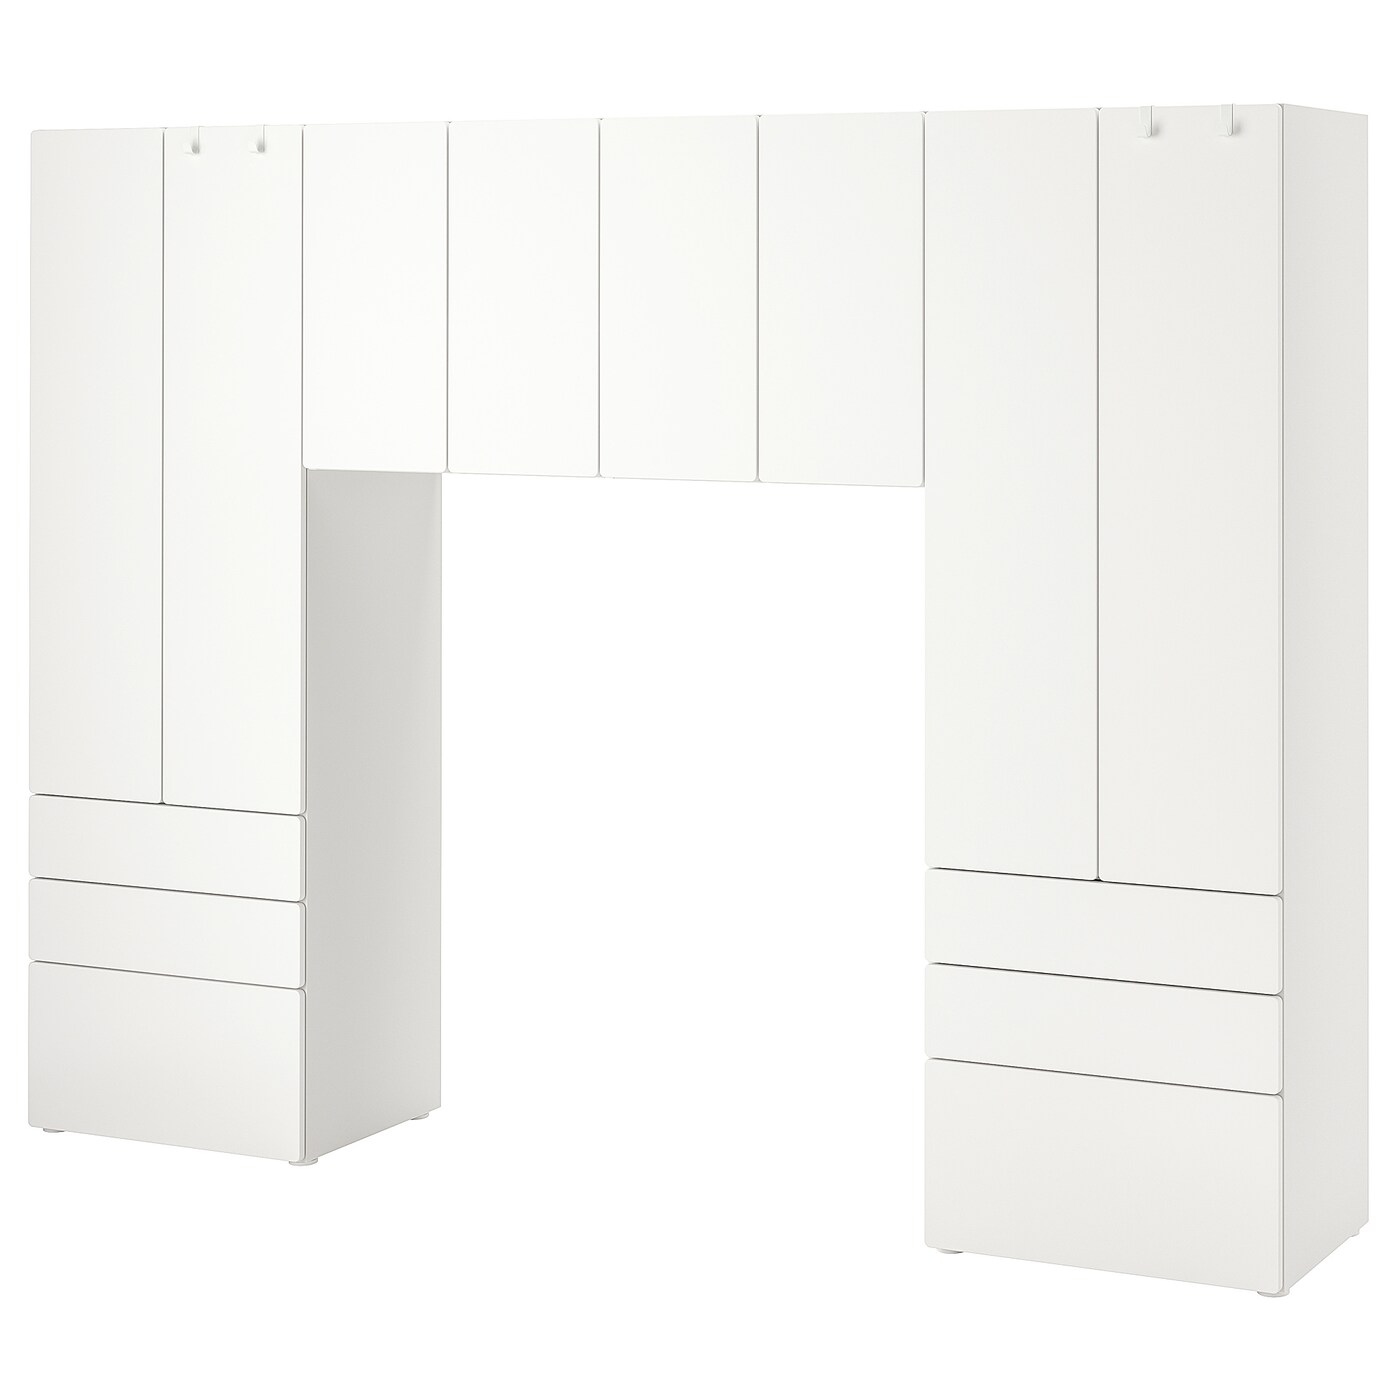 Детская гардеробная комбинация - IKEA PLATSA SMÅSTAD/SMASTAD, 181x42x240см, белый, ПЛАТСА СМОСТАД ИКЕА